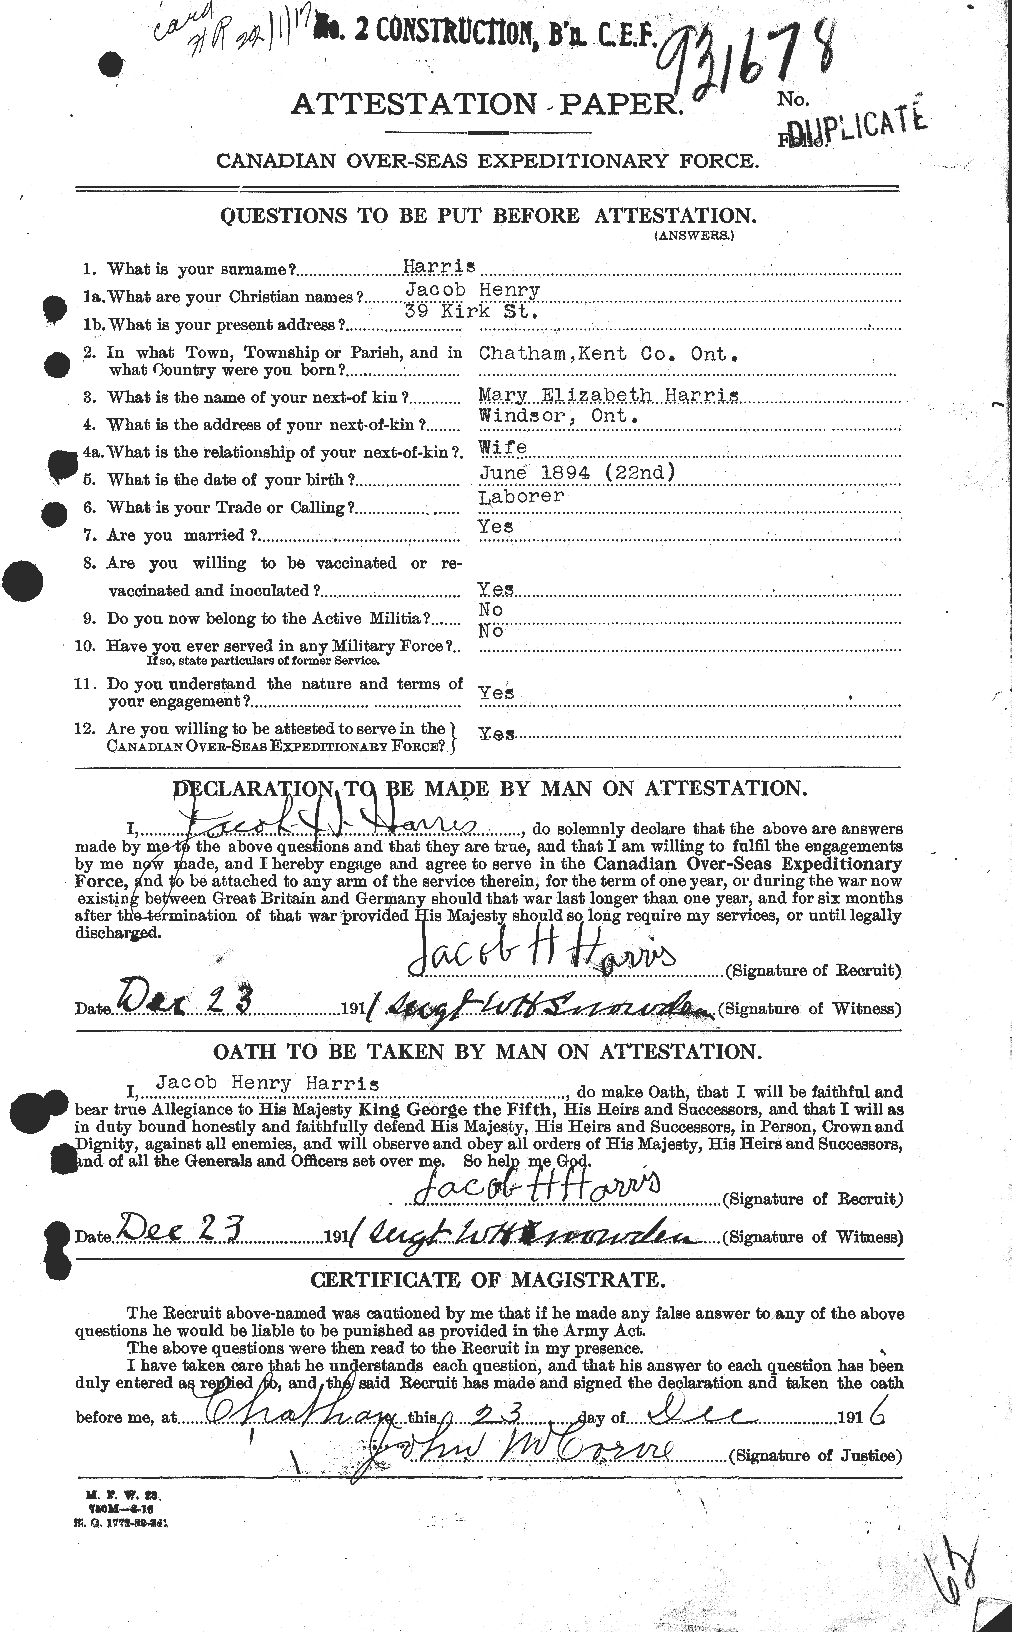 Dossiers du Personnel de la Première Guerre mondiale - CEC 377170a